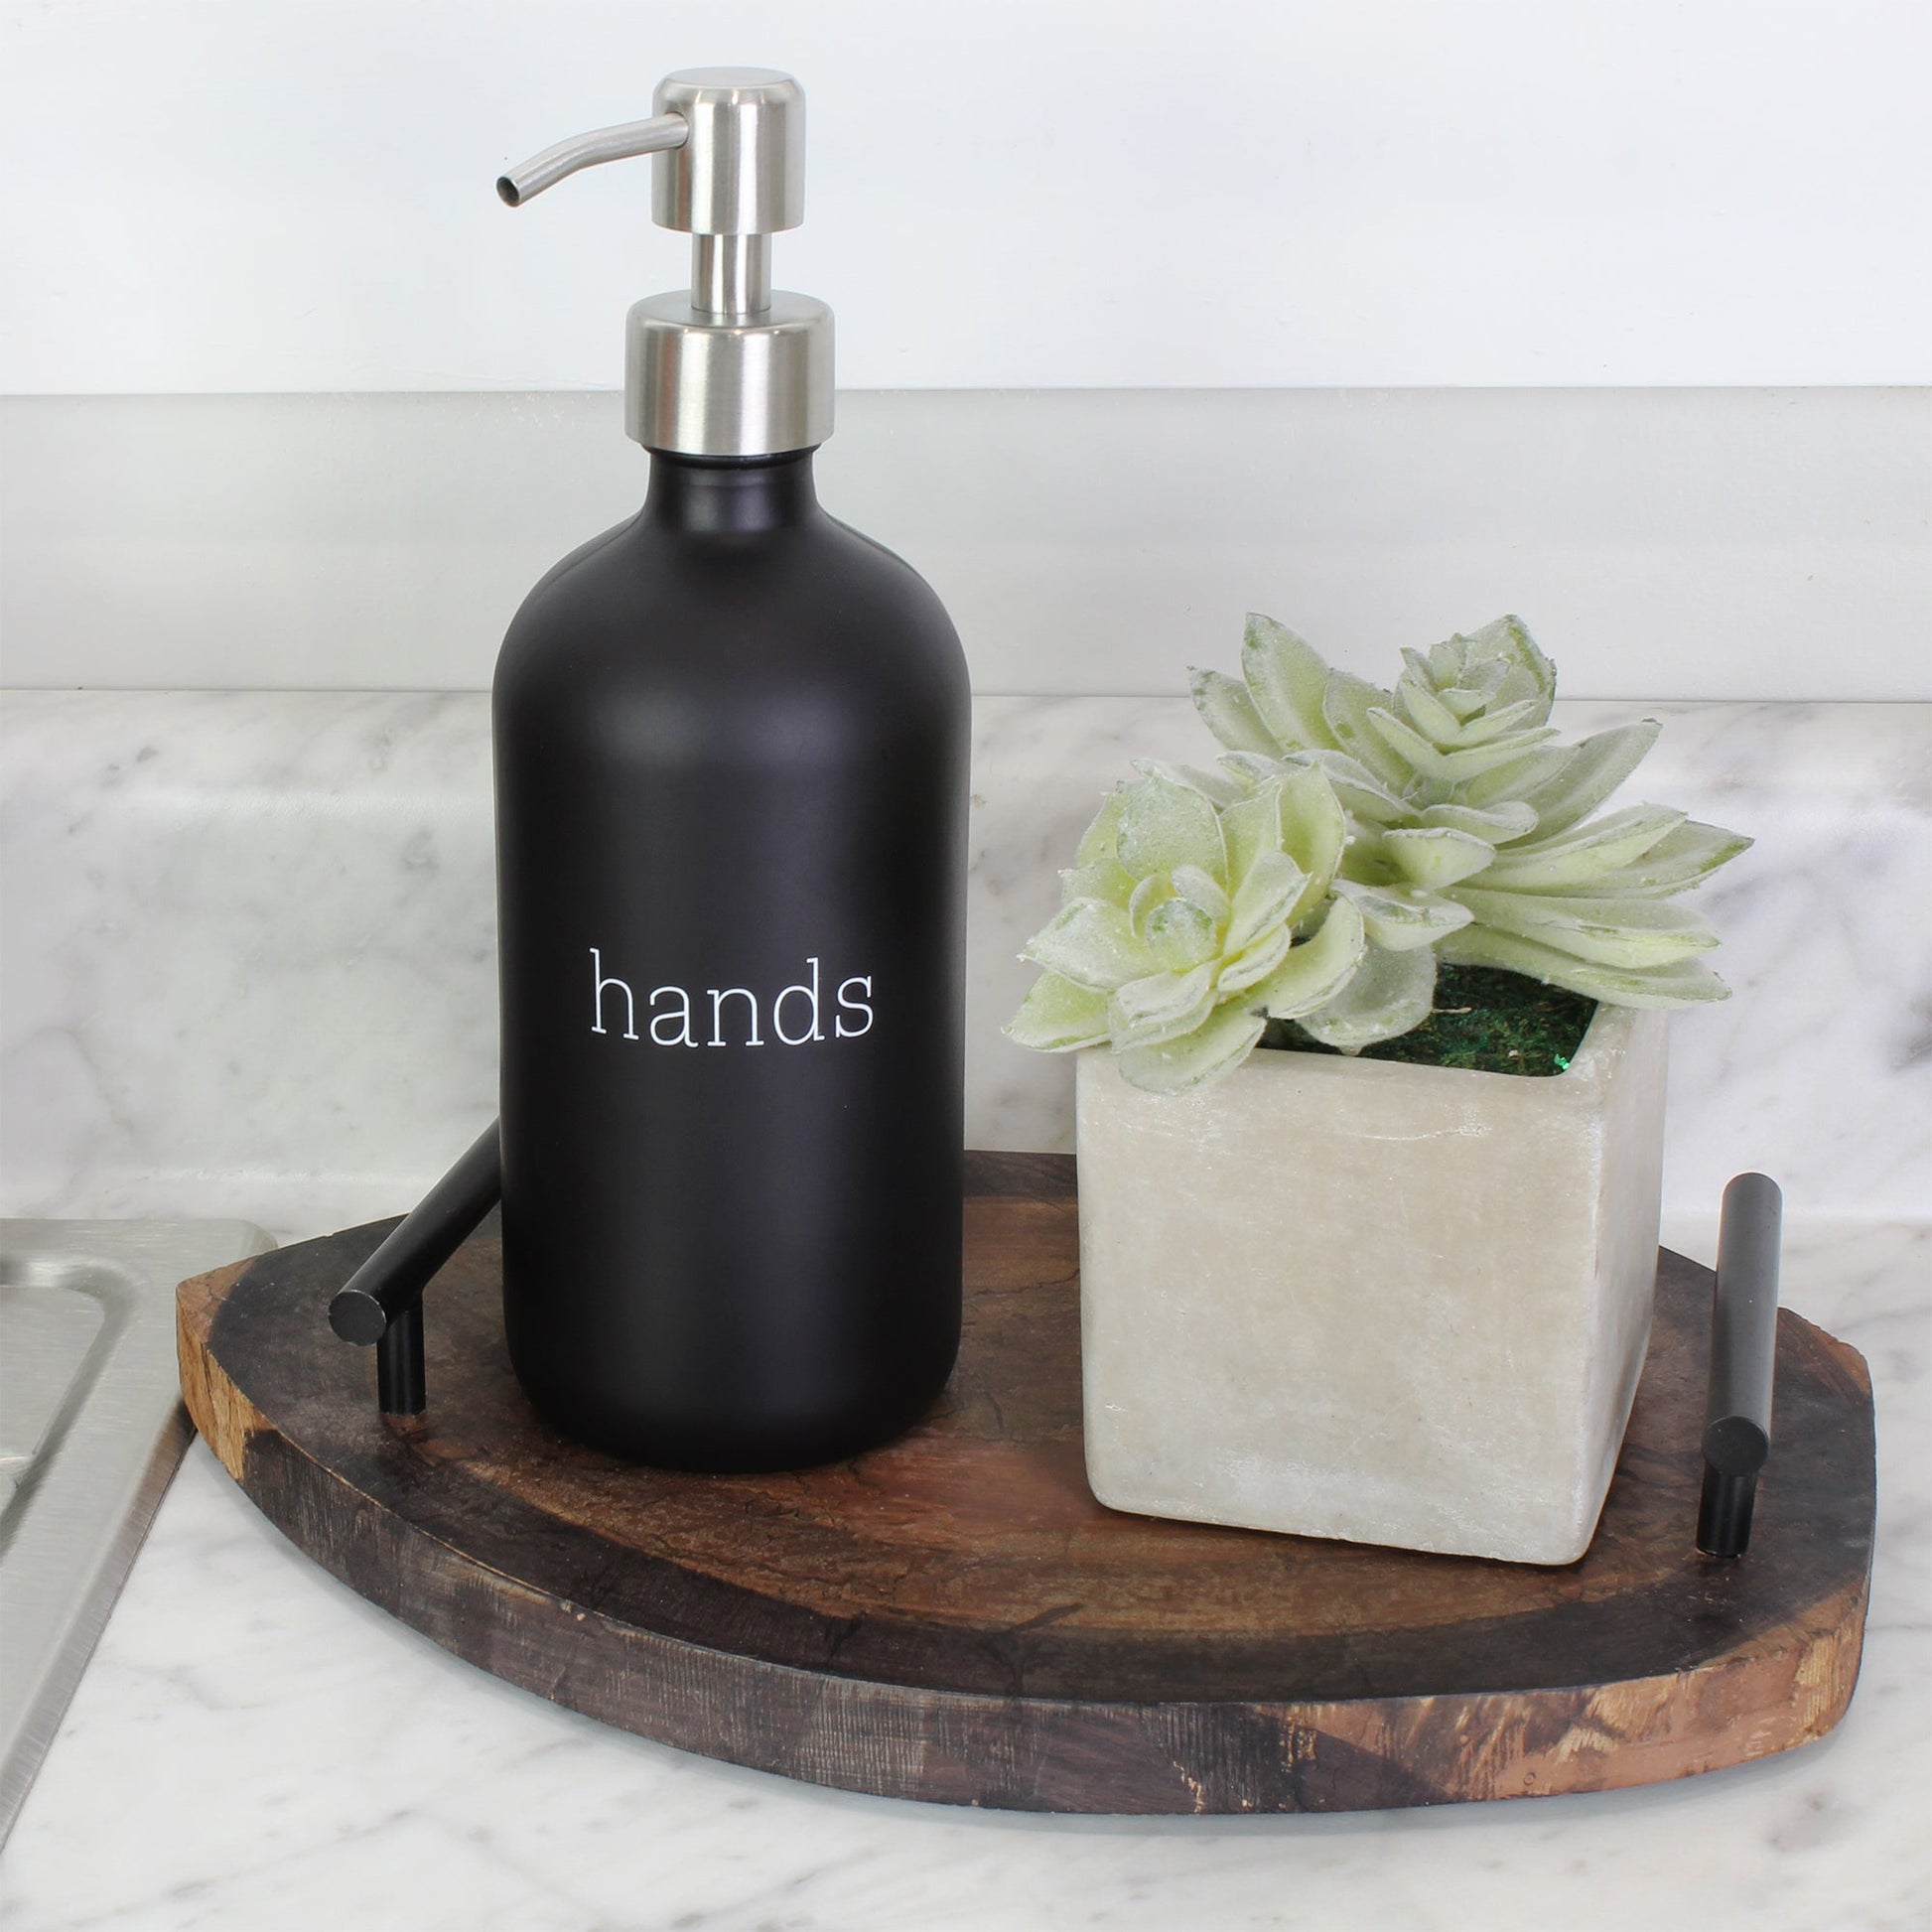 16oz Hands Dishes Pump Bottles (Black, Set of 2) - sh2078cb0